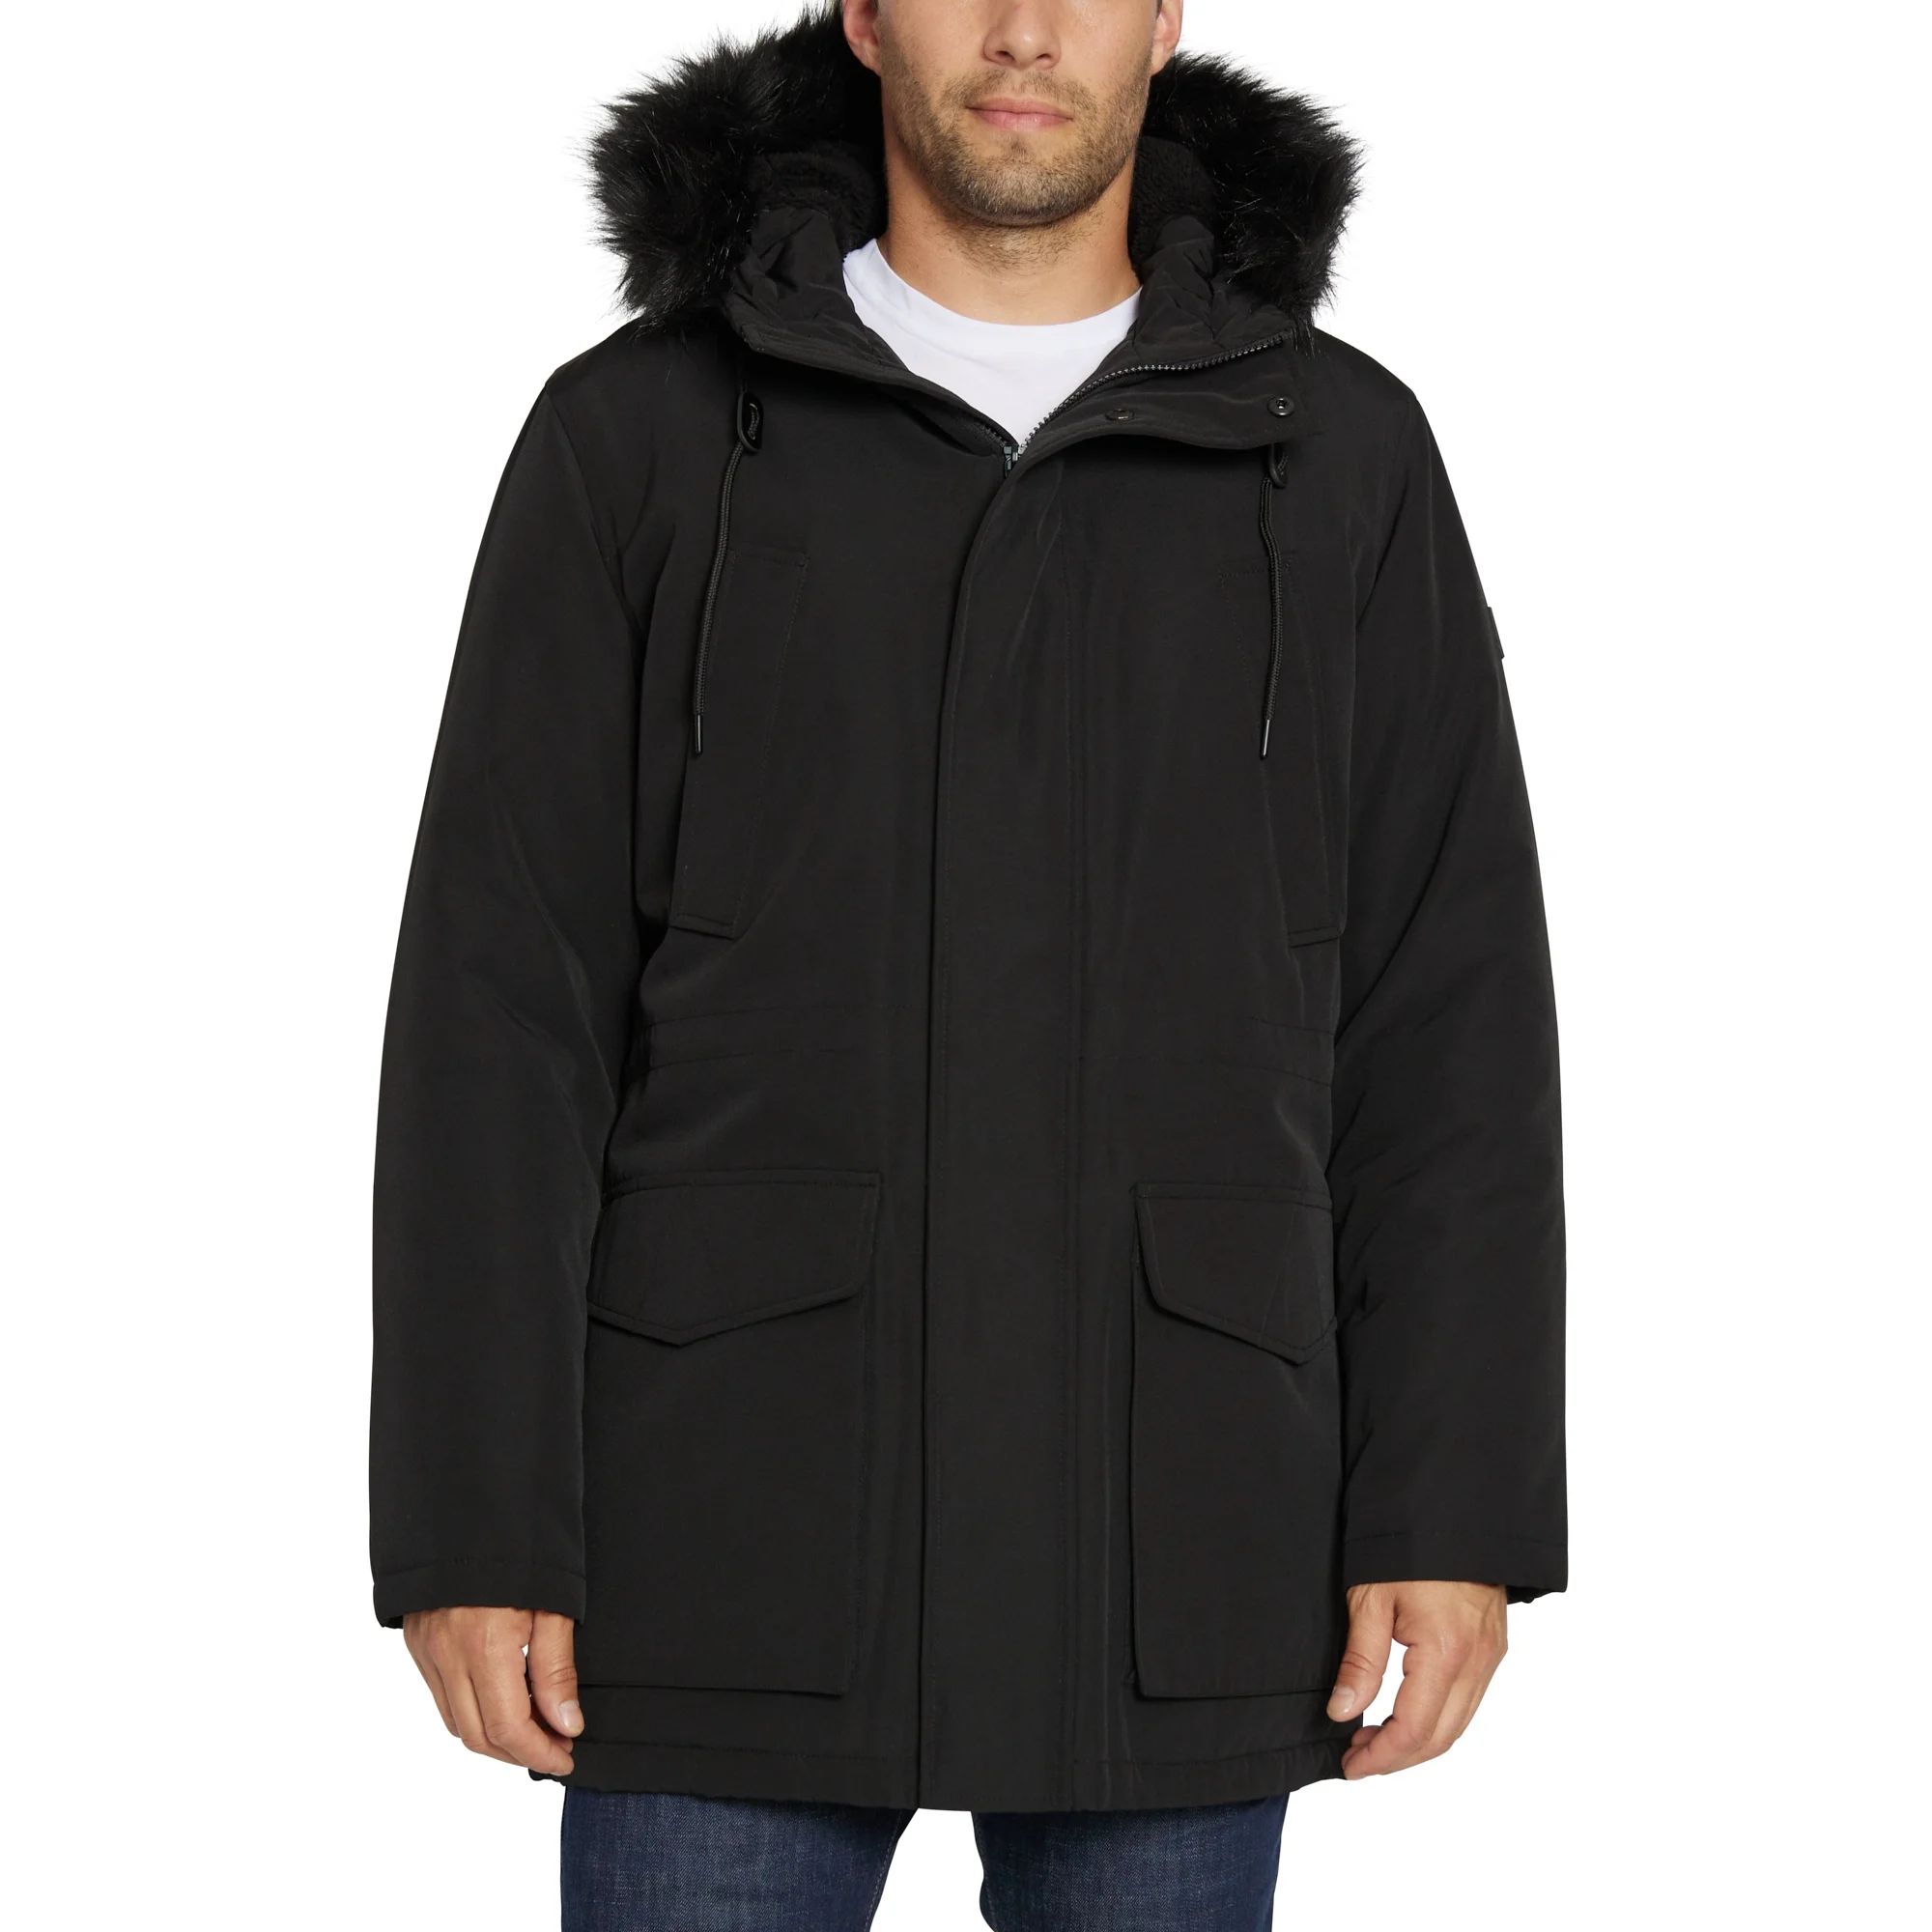 Sean John Men's Faux-Fur Trim Utility Parka Jacket, Sizes S-2XL | Walmart (US)